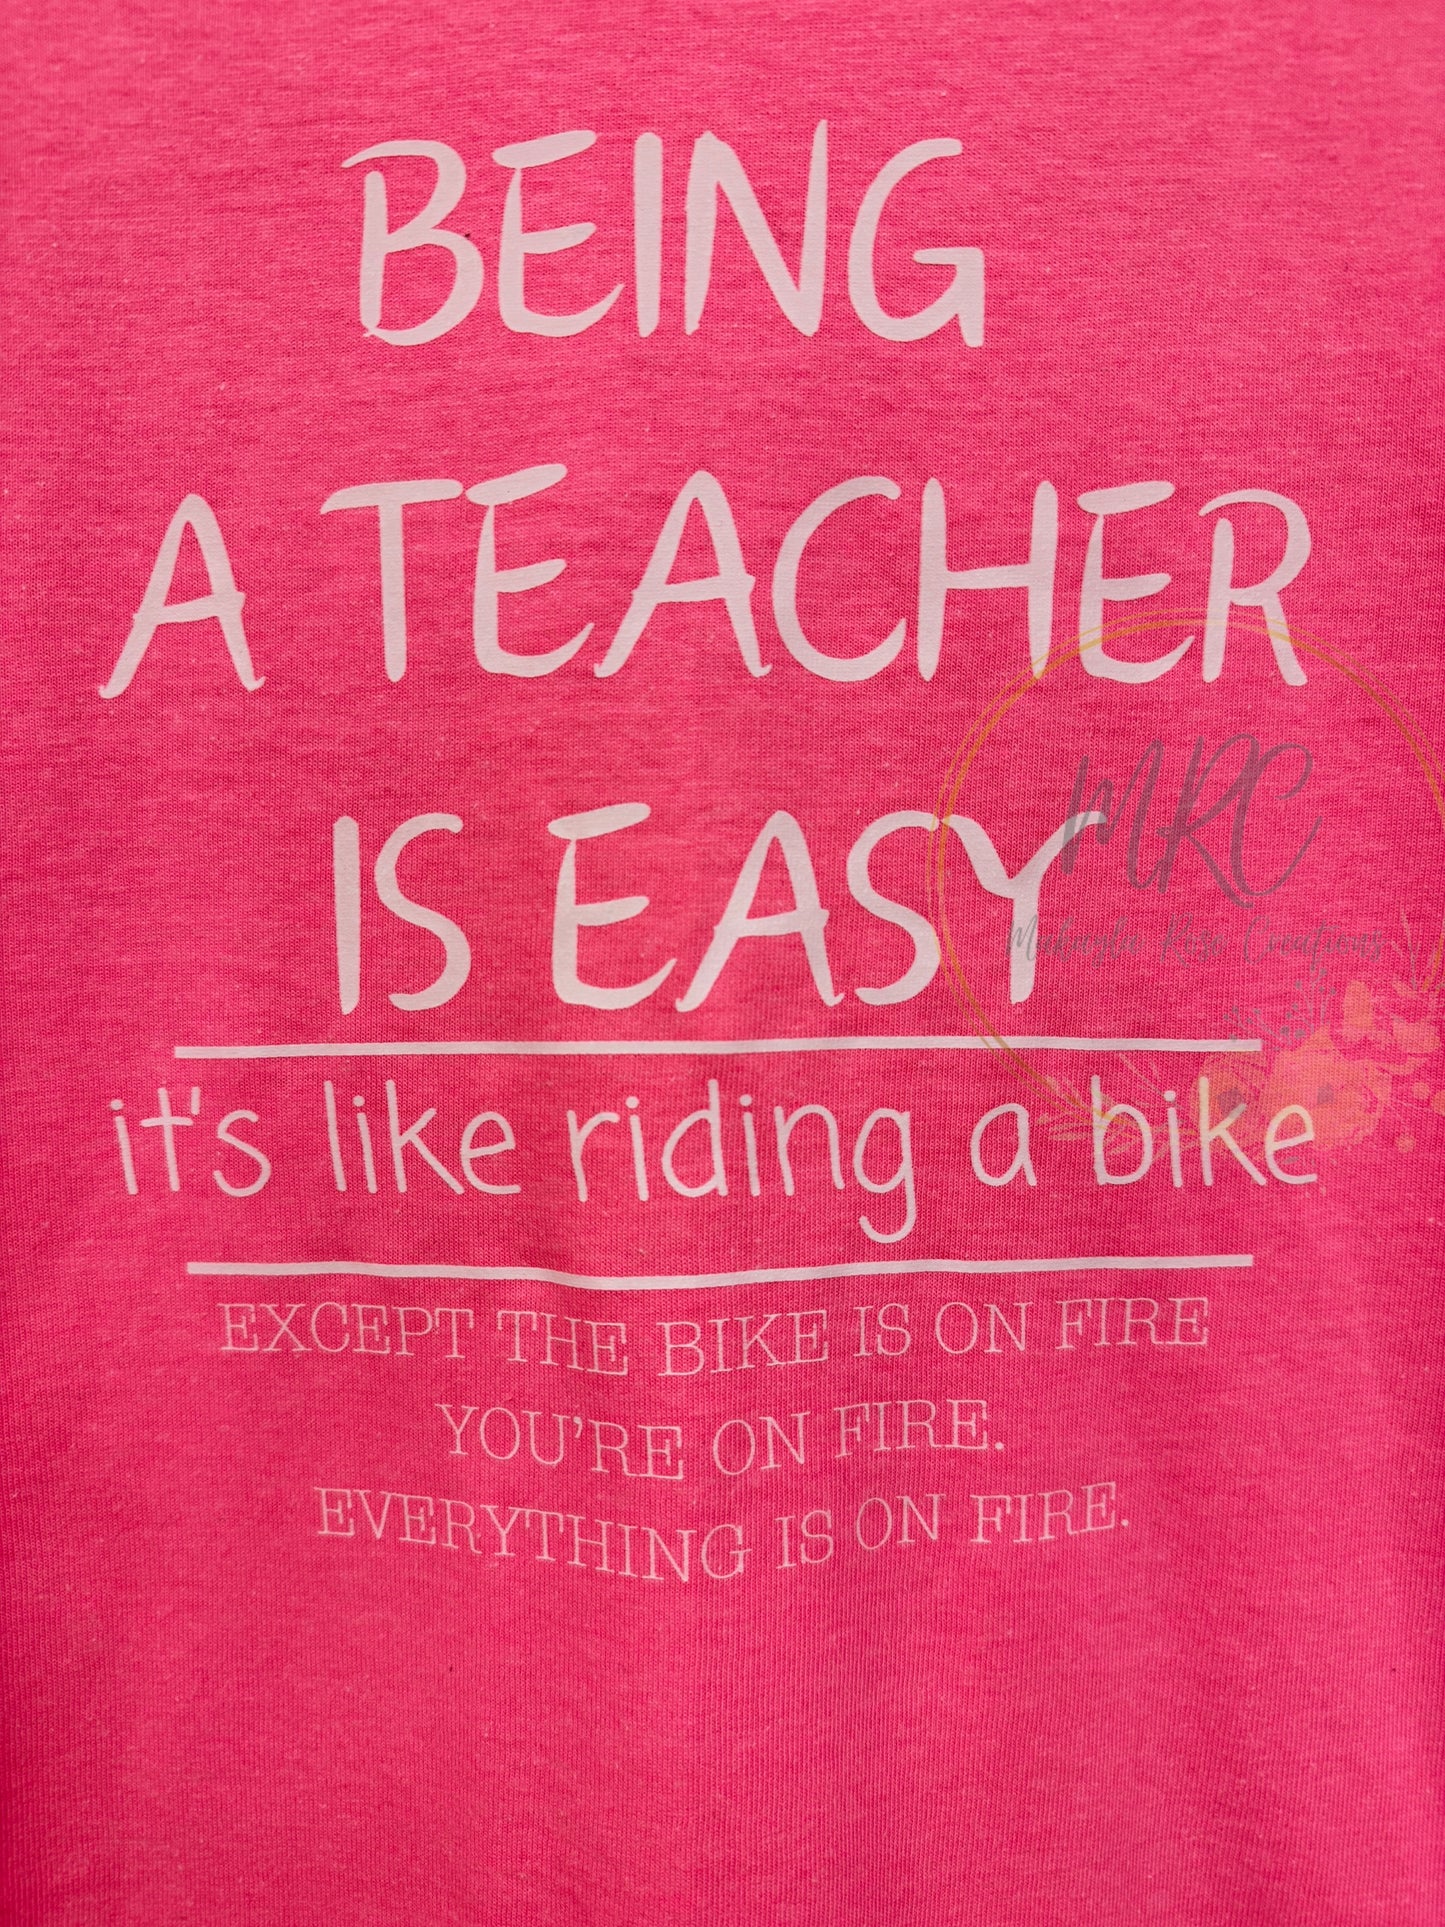 Being a Teacher is Easy T-Shirt